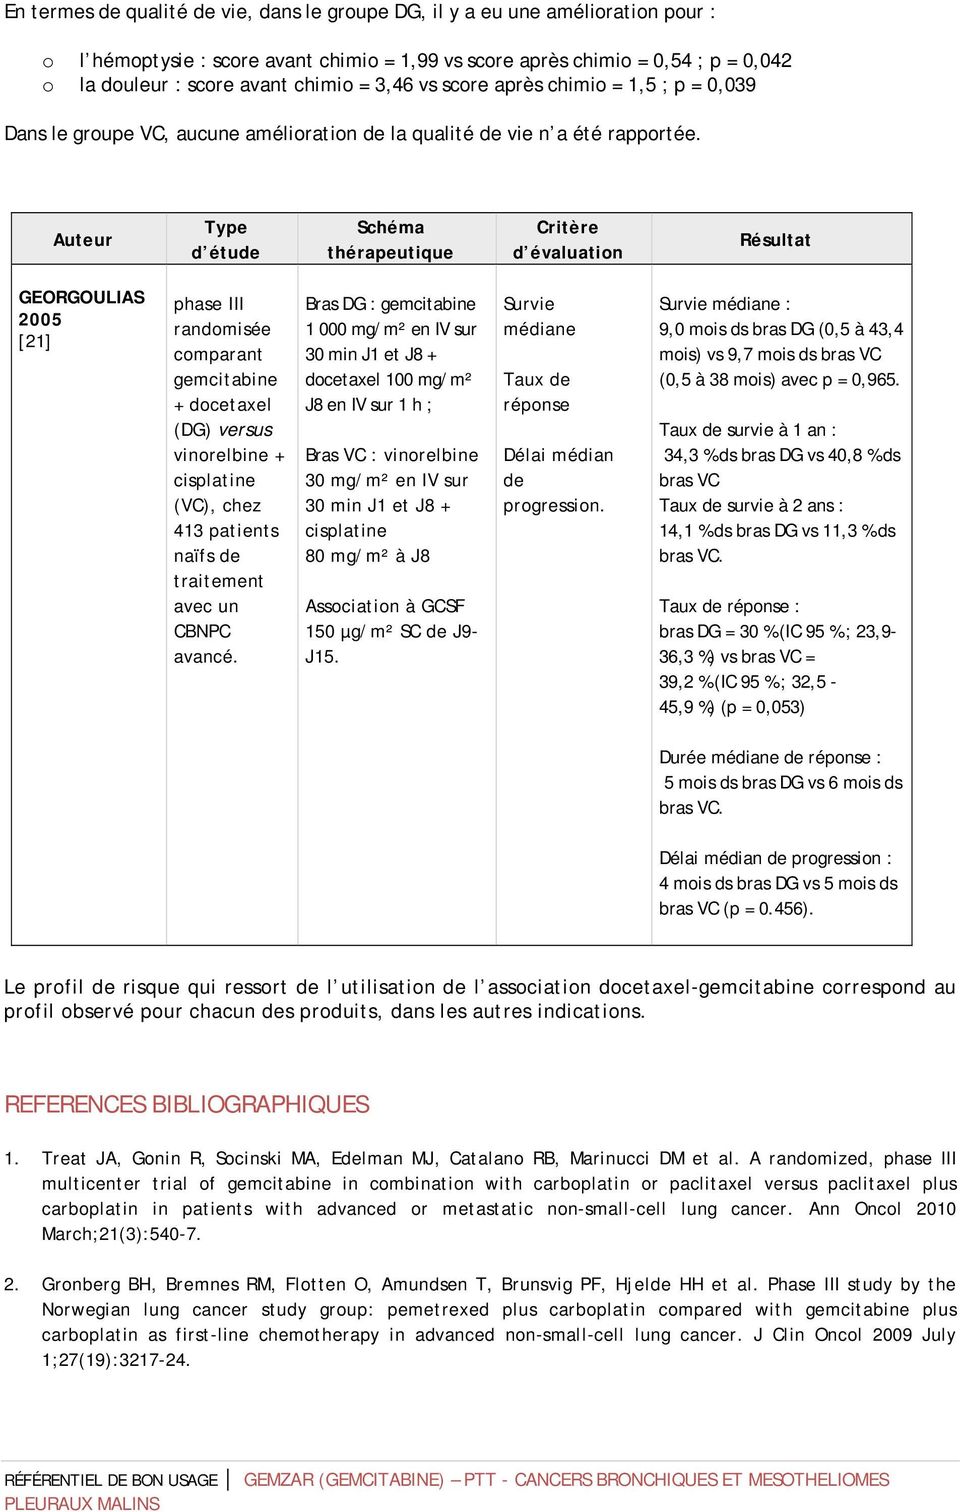 Auteur Type d étude Schéma thérapeutique Critère d évaluation Résultat GEORGOULIAS 2005 [21] phase III randomisée comparant gemcitabine + docetaxel (DG) versus vinorelbine + cisplatine (VC), chez 413